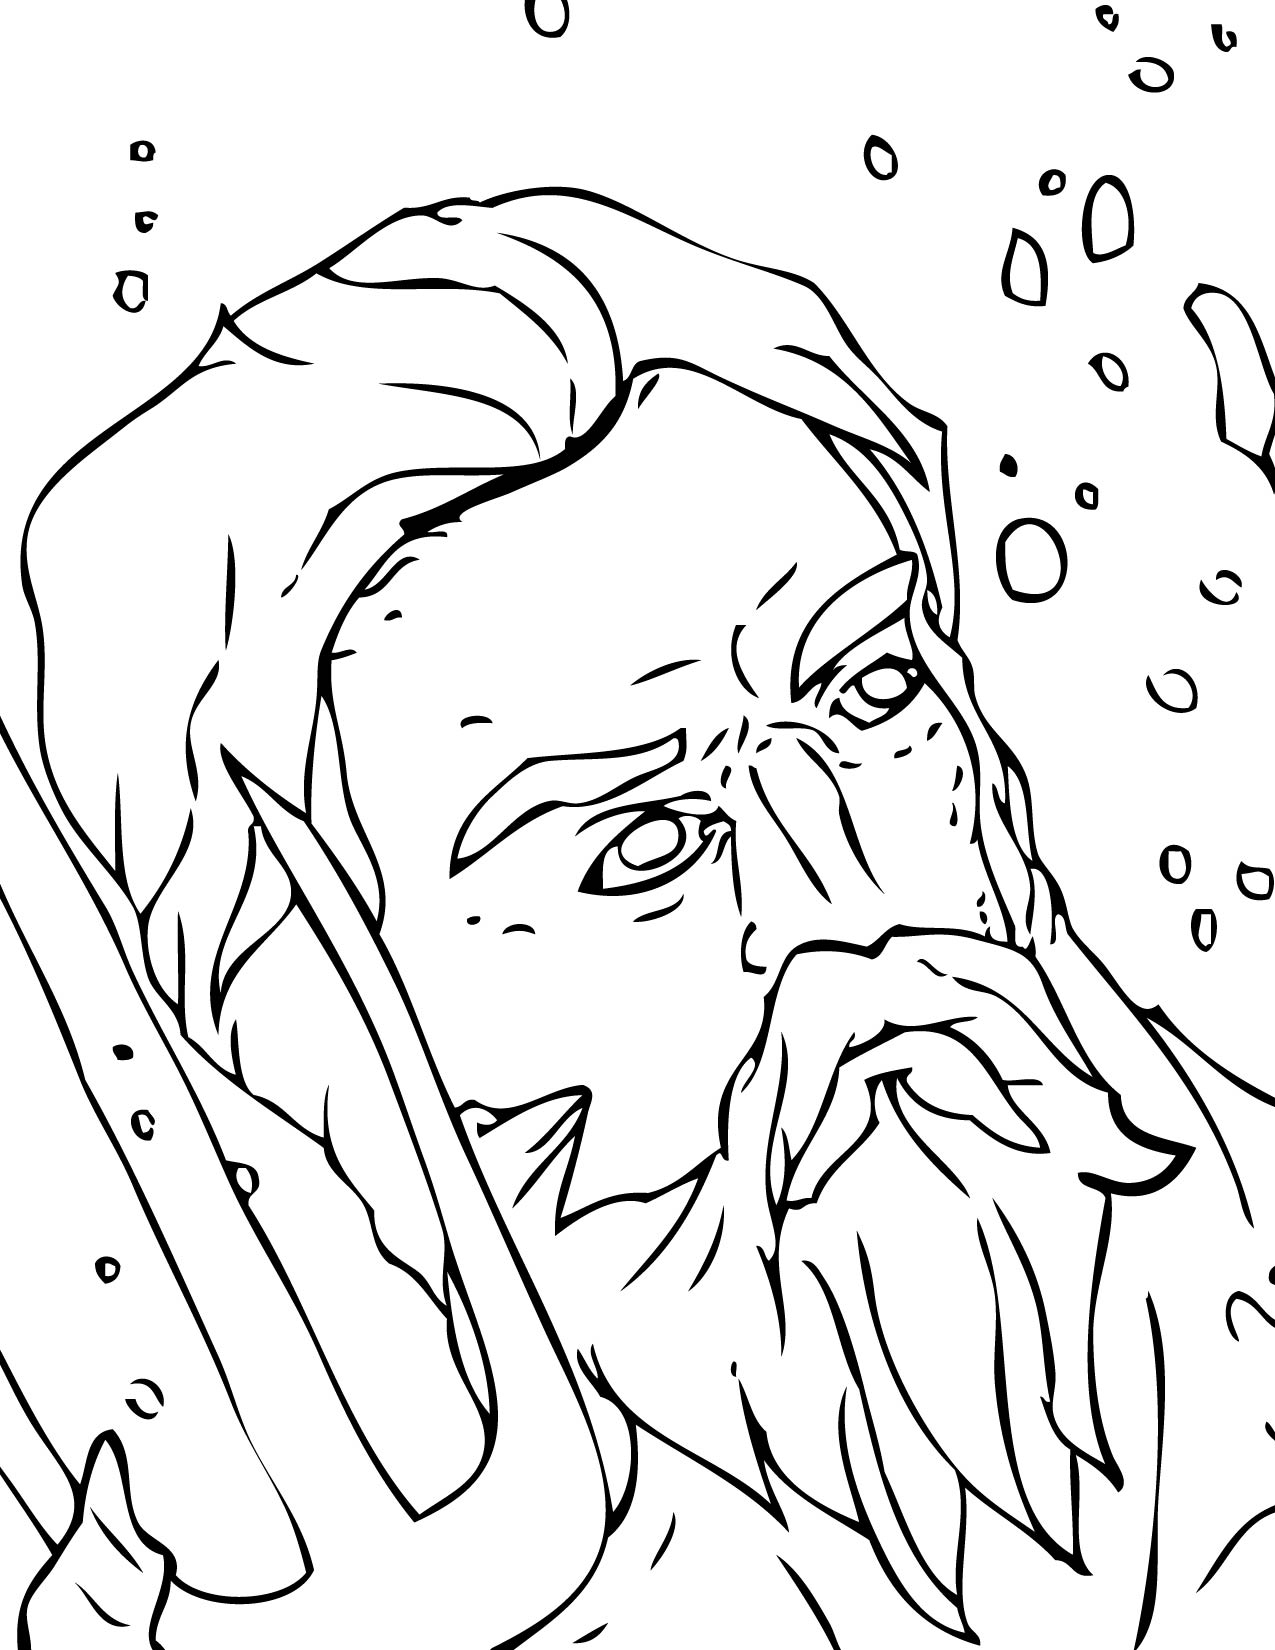 Раскраска человека с бородой из Древнего мира (древний)